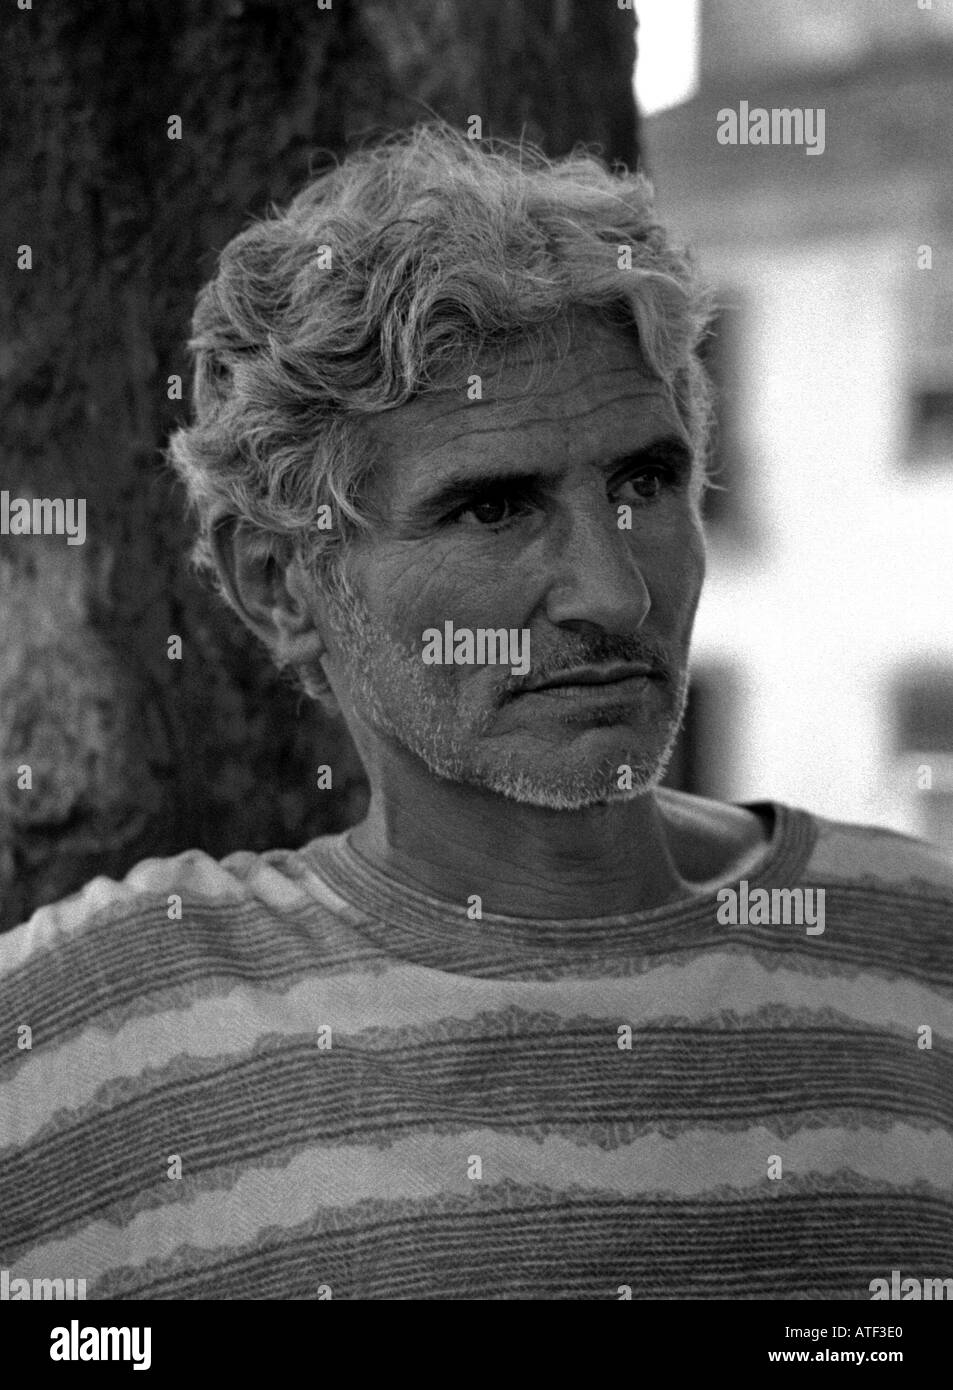 'Street Philosoph' mächtig & intensive Porträt von nachdenklich senilen Mann Paraty Rio de Janeiro Brasilien Brasil Süden Lateinamerikas Stockfoto